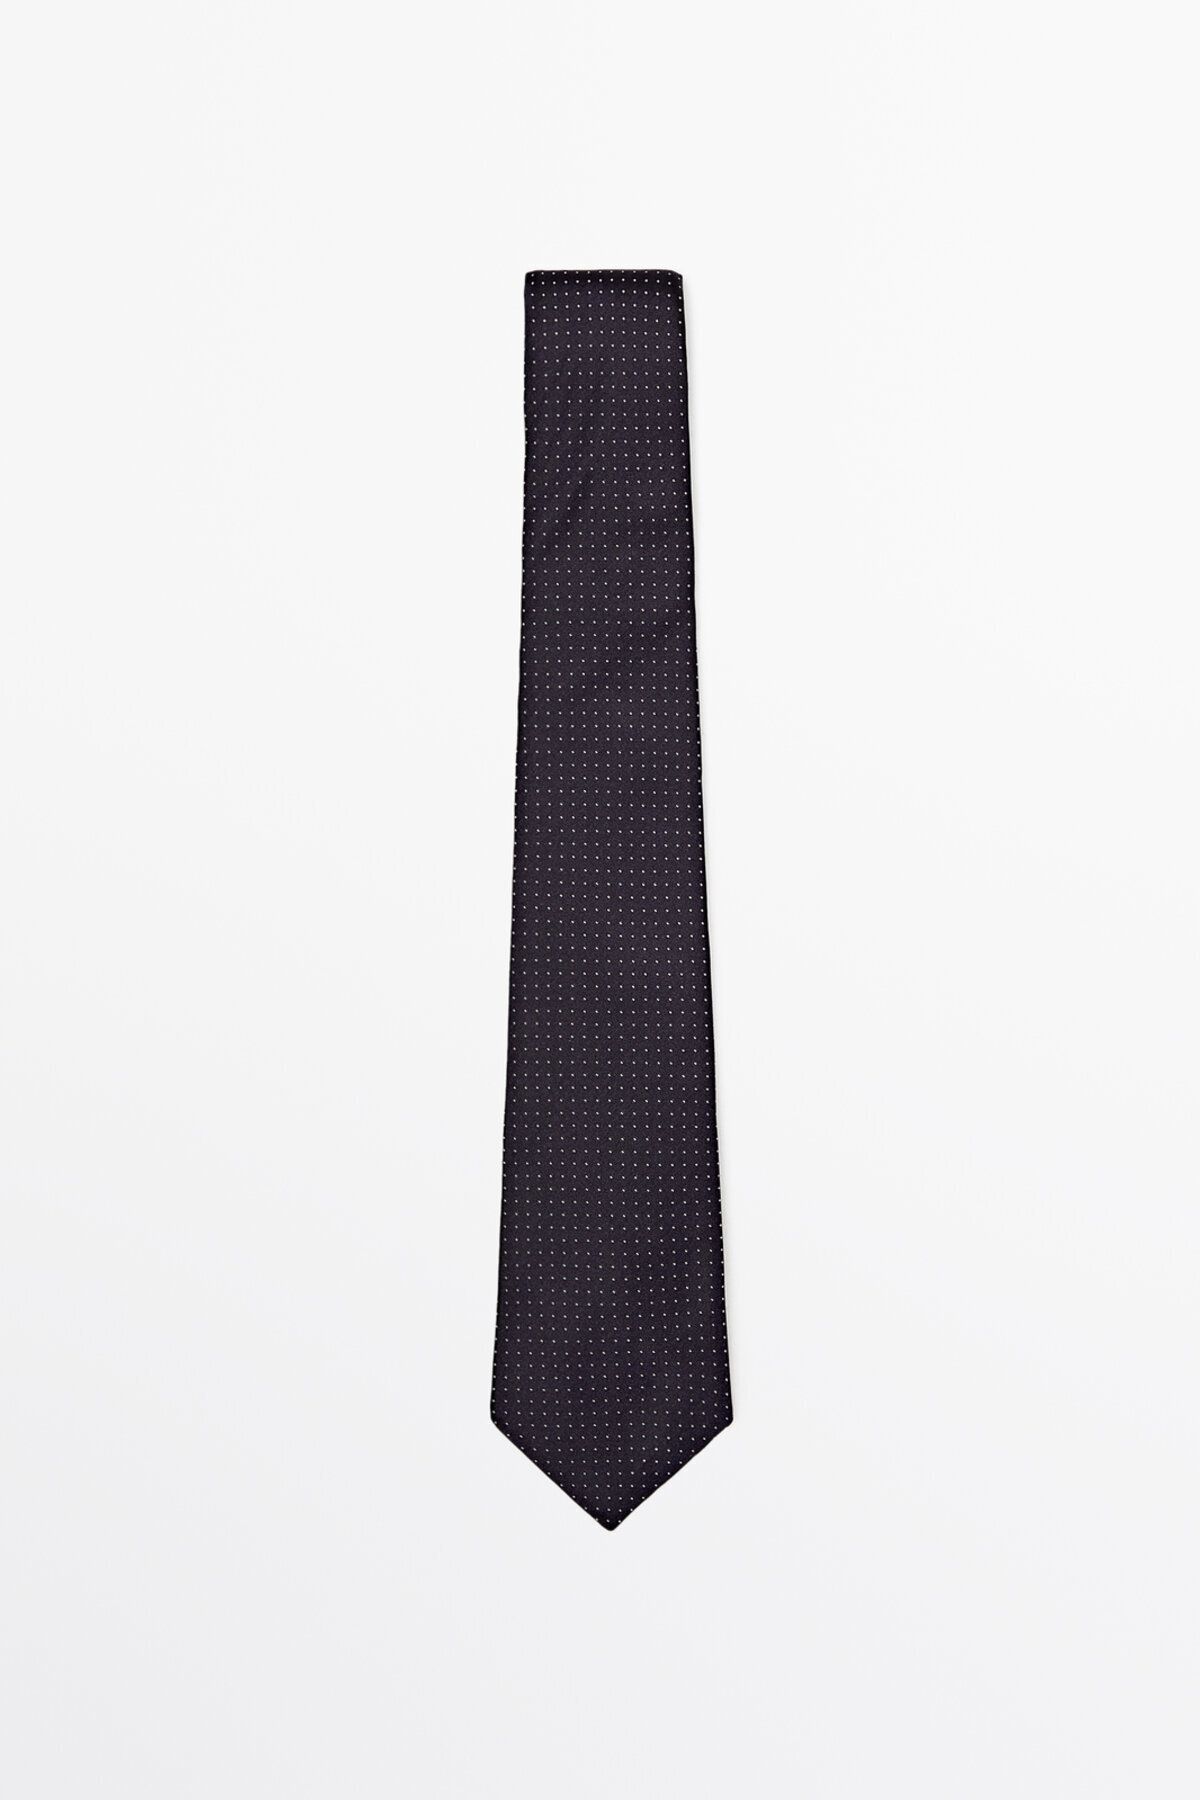 Massimo Dutti %100 ipek puantiye desenli kravat